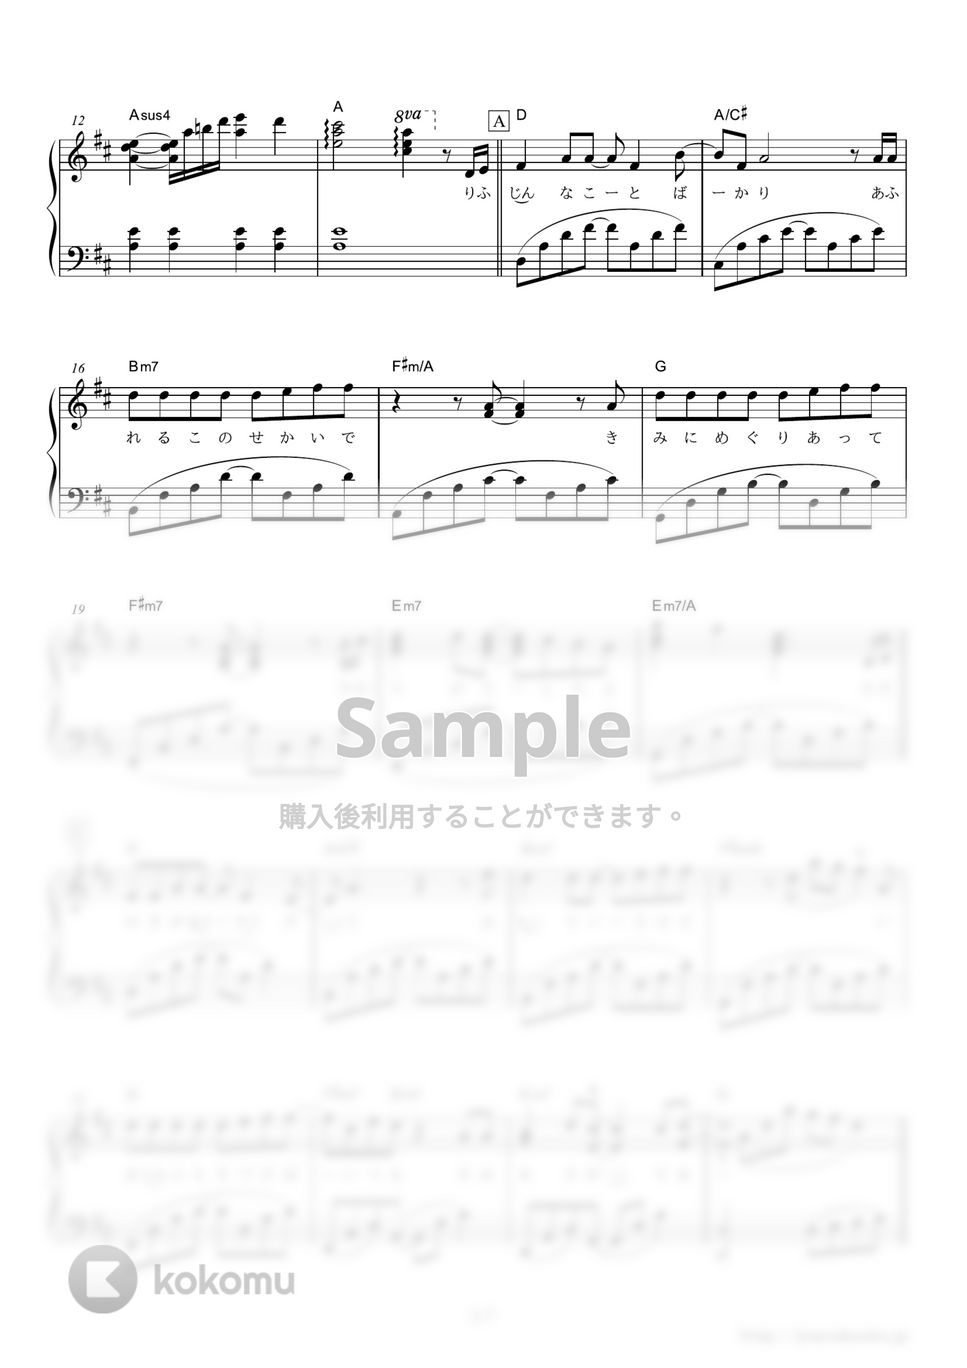 ナオト・インティライミ - いつかきっと (資生堂『SEABREEZE』CMソング) by ピアノの本棚